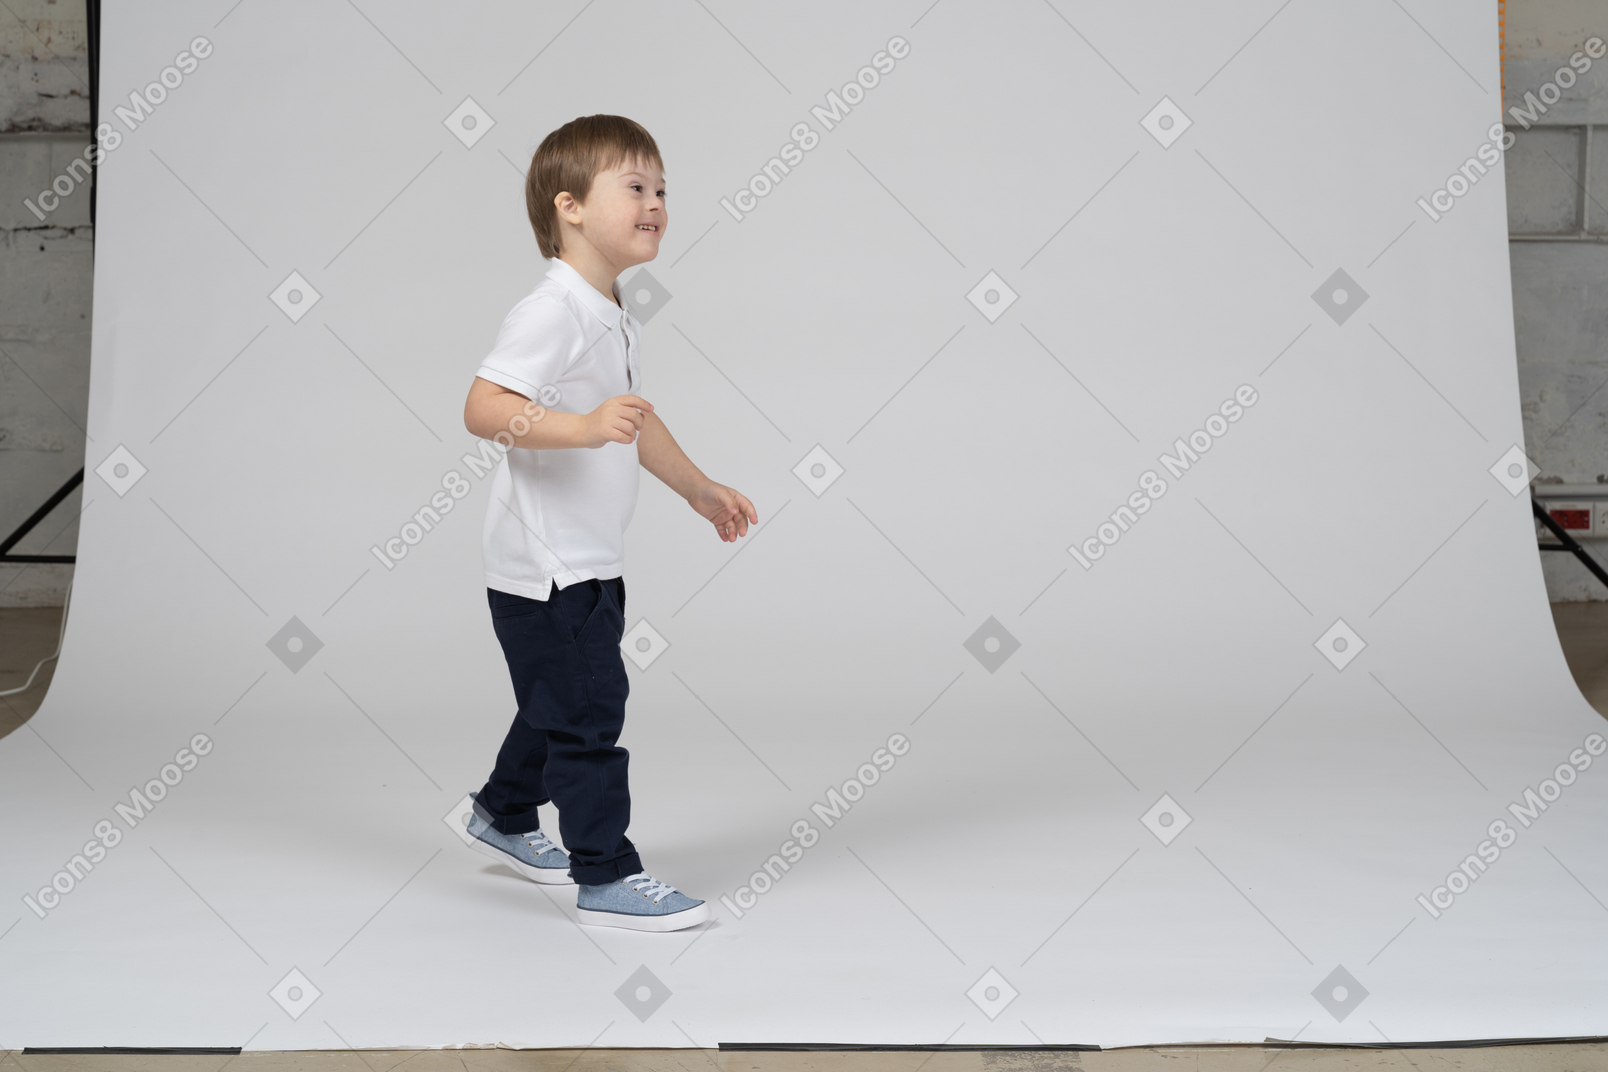 歩く陽気な少年の側面図